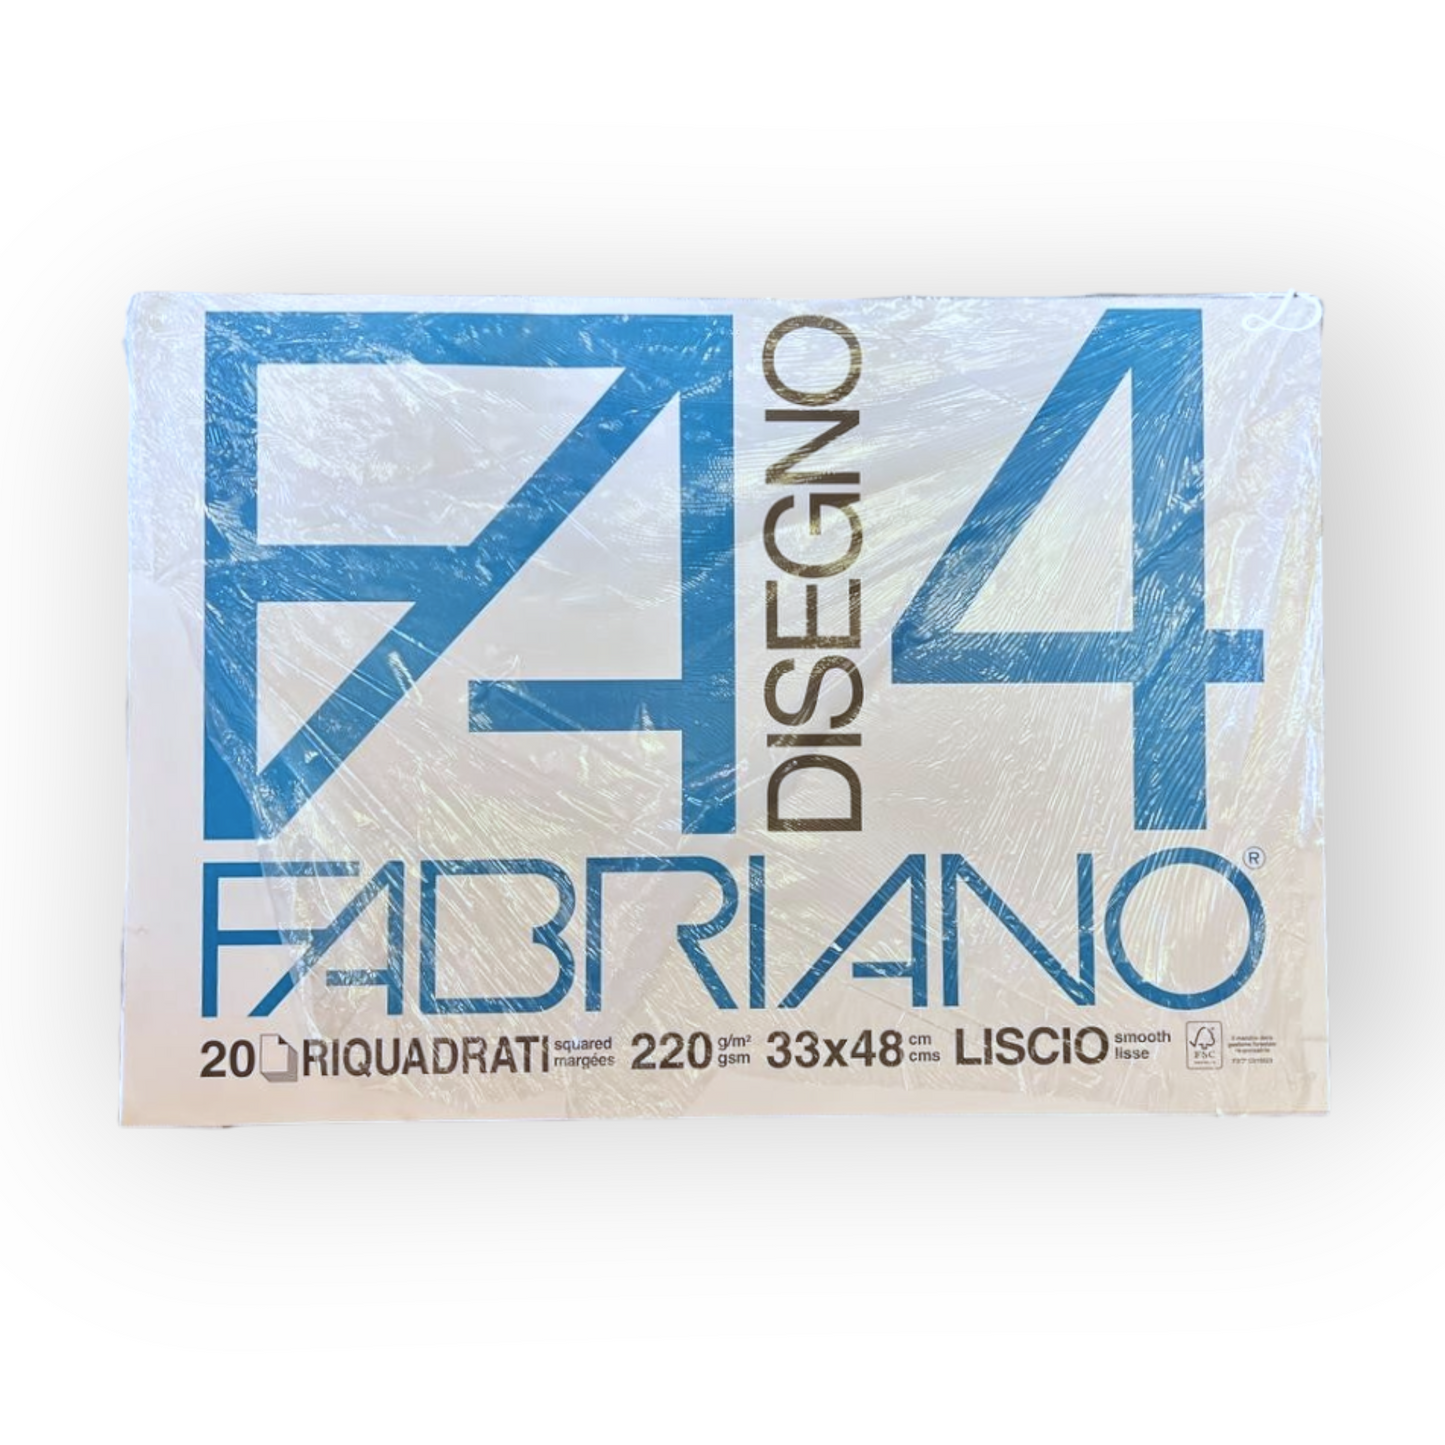 FABRIANO F4 33*48 220gr RIQUADRATO – Cartoleria Barbieri di Turelli Elena,  P.le San Domenico, 2 MODENA - P.I. 03148310364